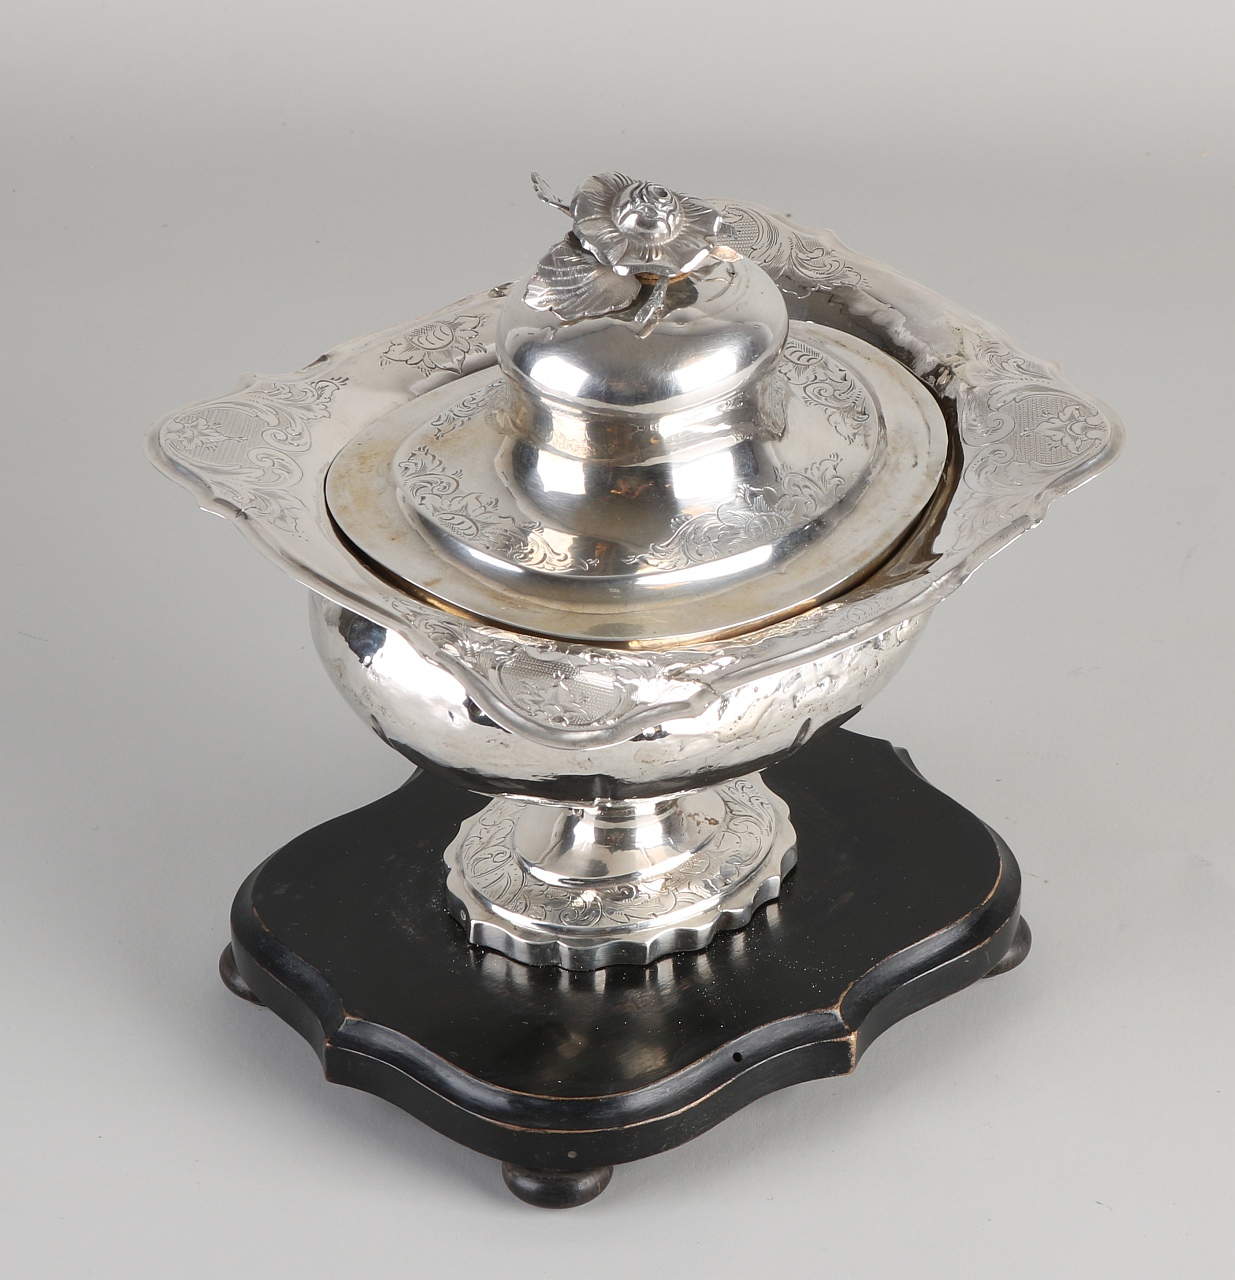 Silbernes Tabakglas, 833/000, umrissenes Modell mit Gravur und einer Blume als Knopf auf dem Deckel - Image 2 of 2